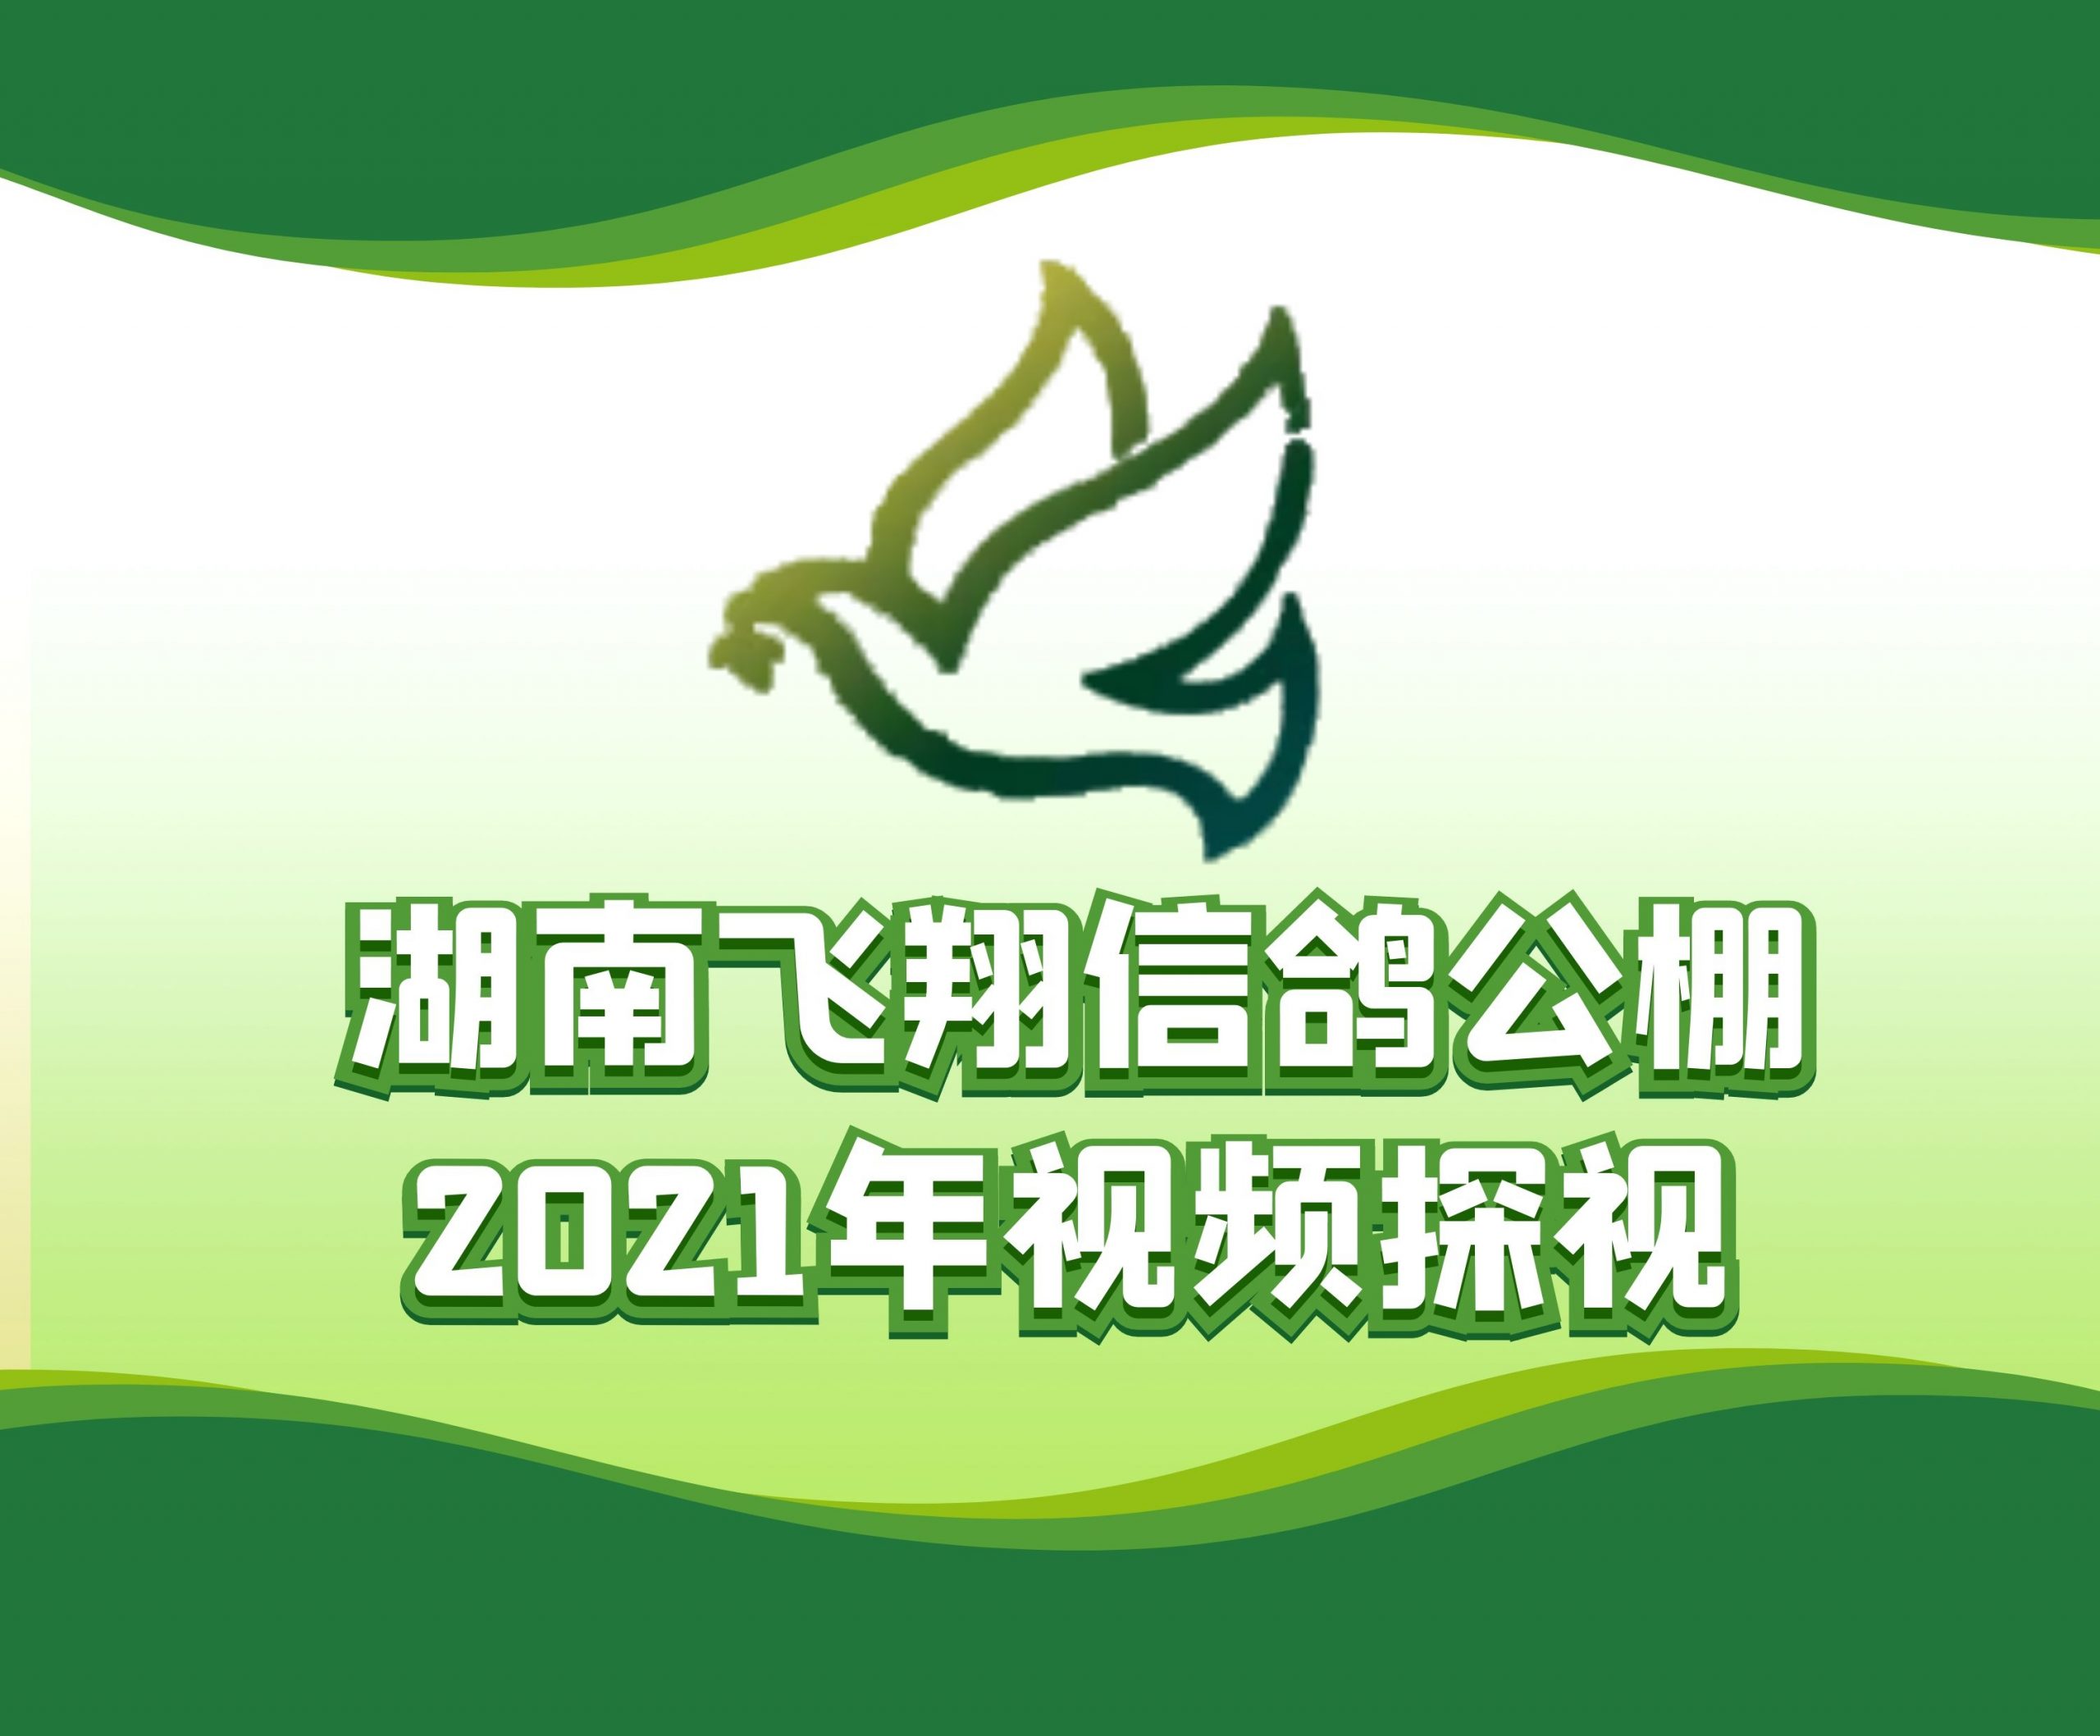 龙城赛鸽俱乐部谭志超-2021-32-0524592